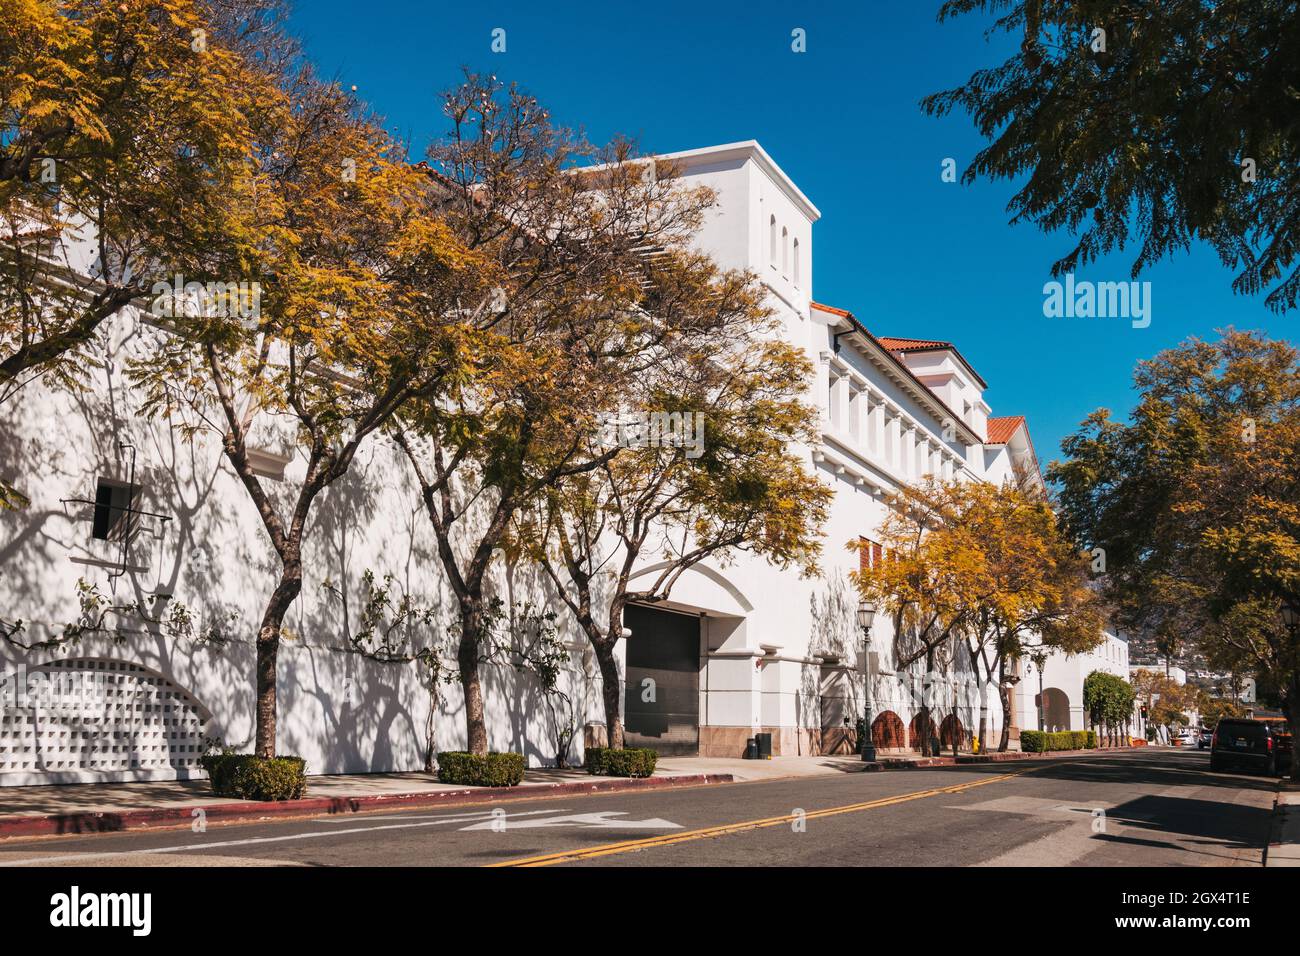 Die Rückseite des Paseo Nuevo Einkaufszentrums in Santa Barbara, Kalifornien. Entworfen in einem spanischen Kolonialstil Stockfoto